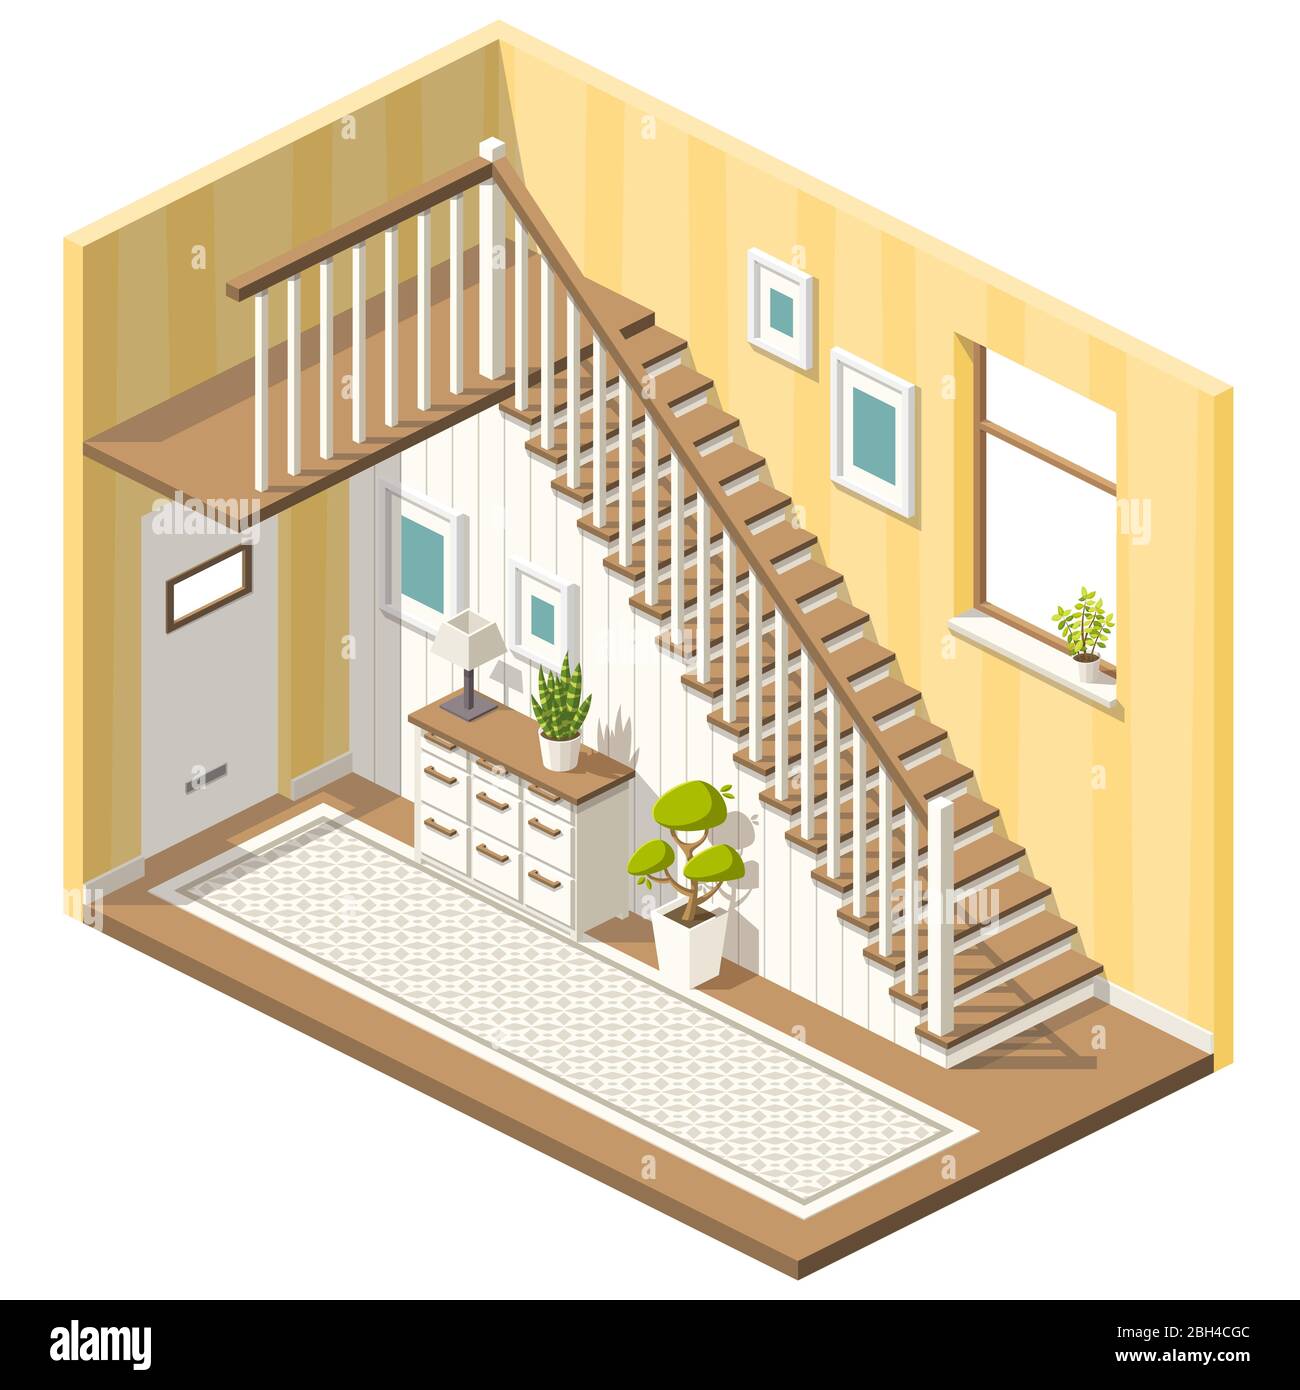 Hall isométrique avec escaliers et meubles. Illustration vectorielle avec calques séparés. Illustration de Vecteur